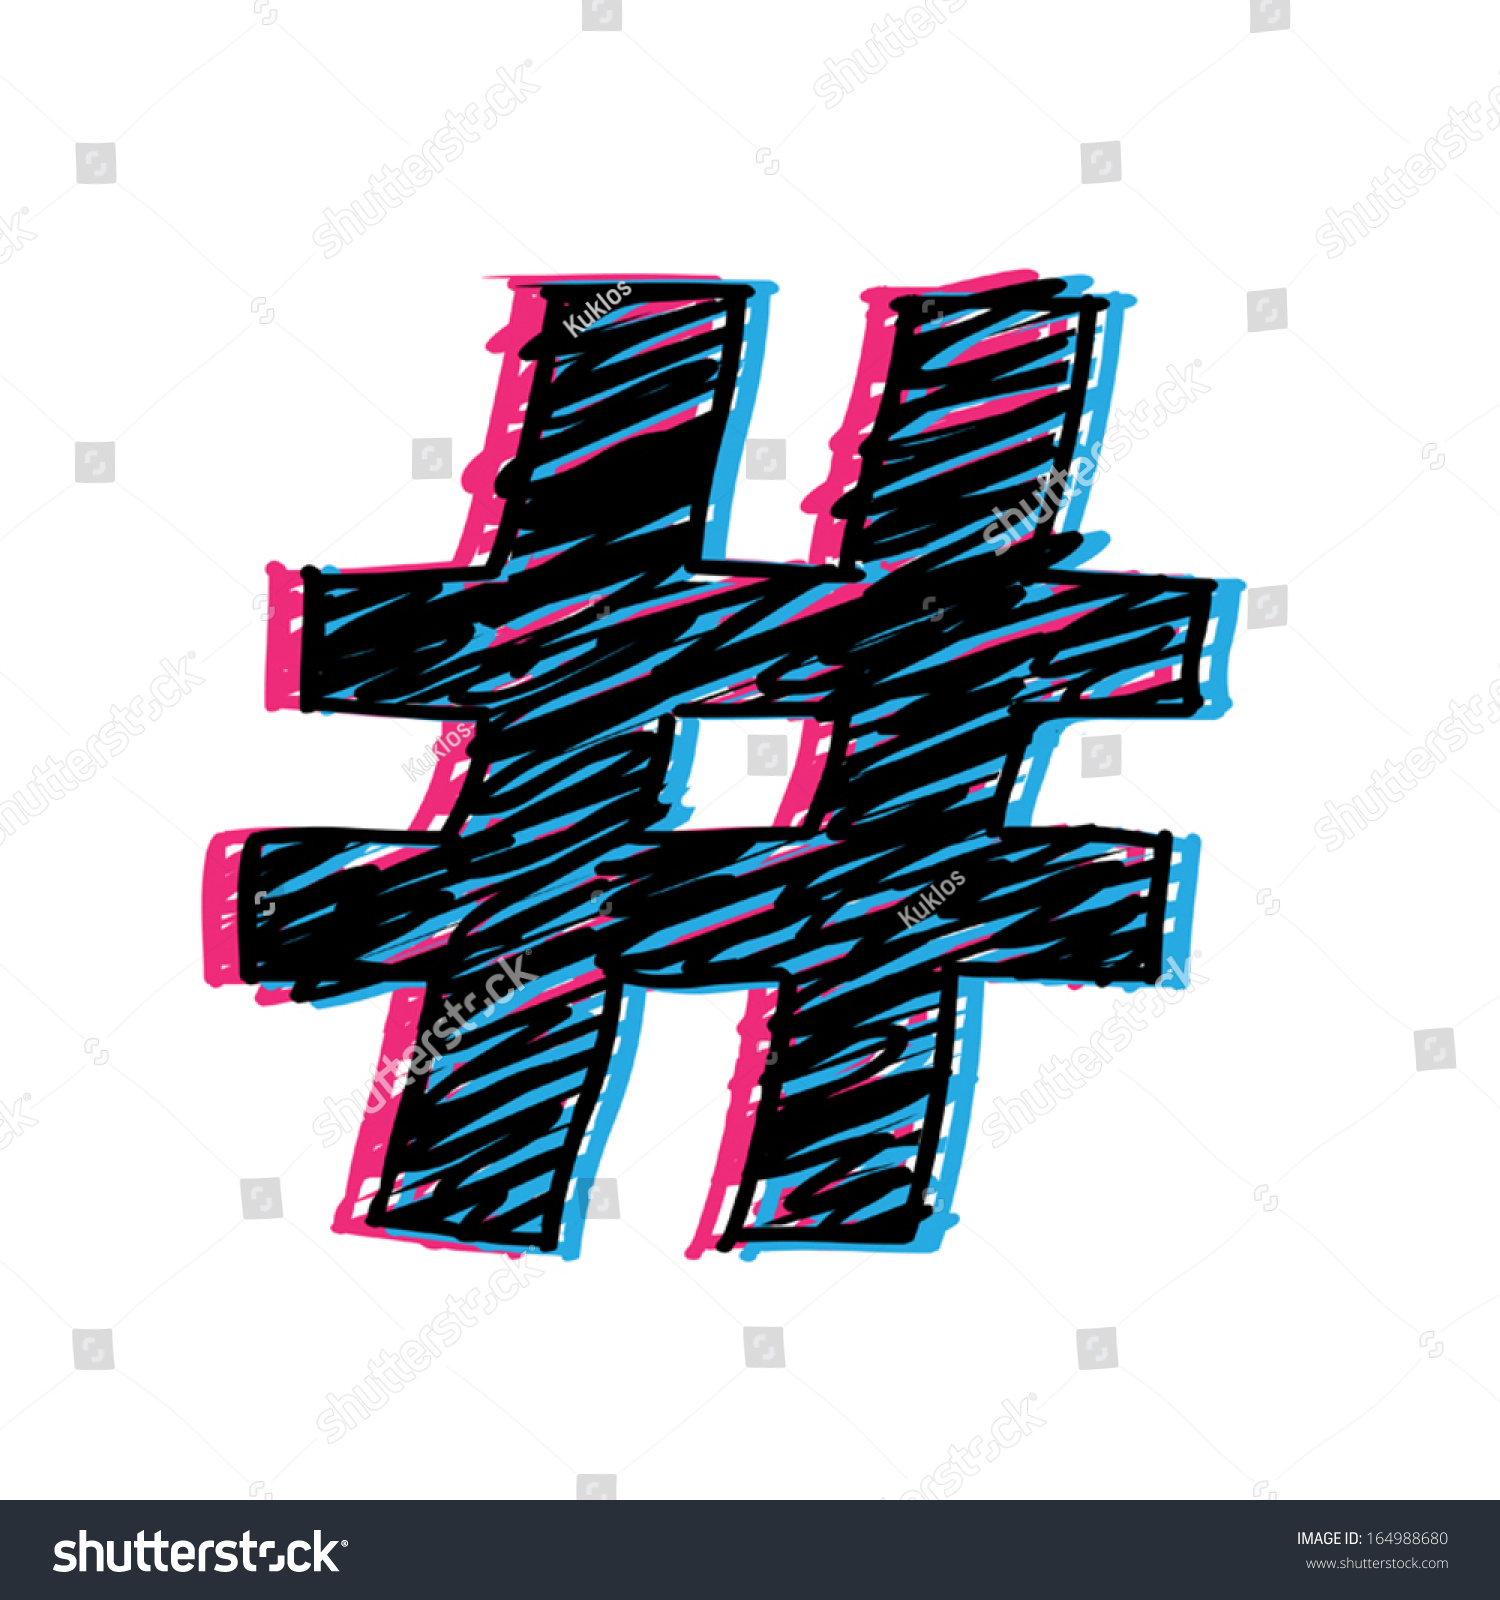 3d Hashtag Stock Vector Illustration 164988680 : Shutterstock